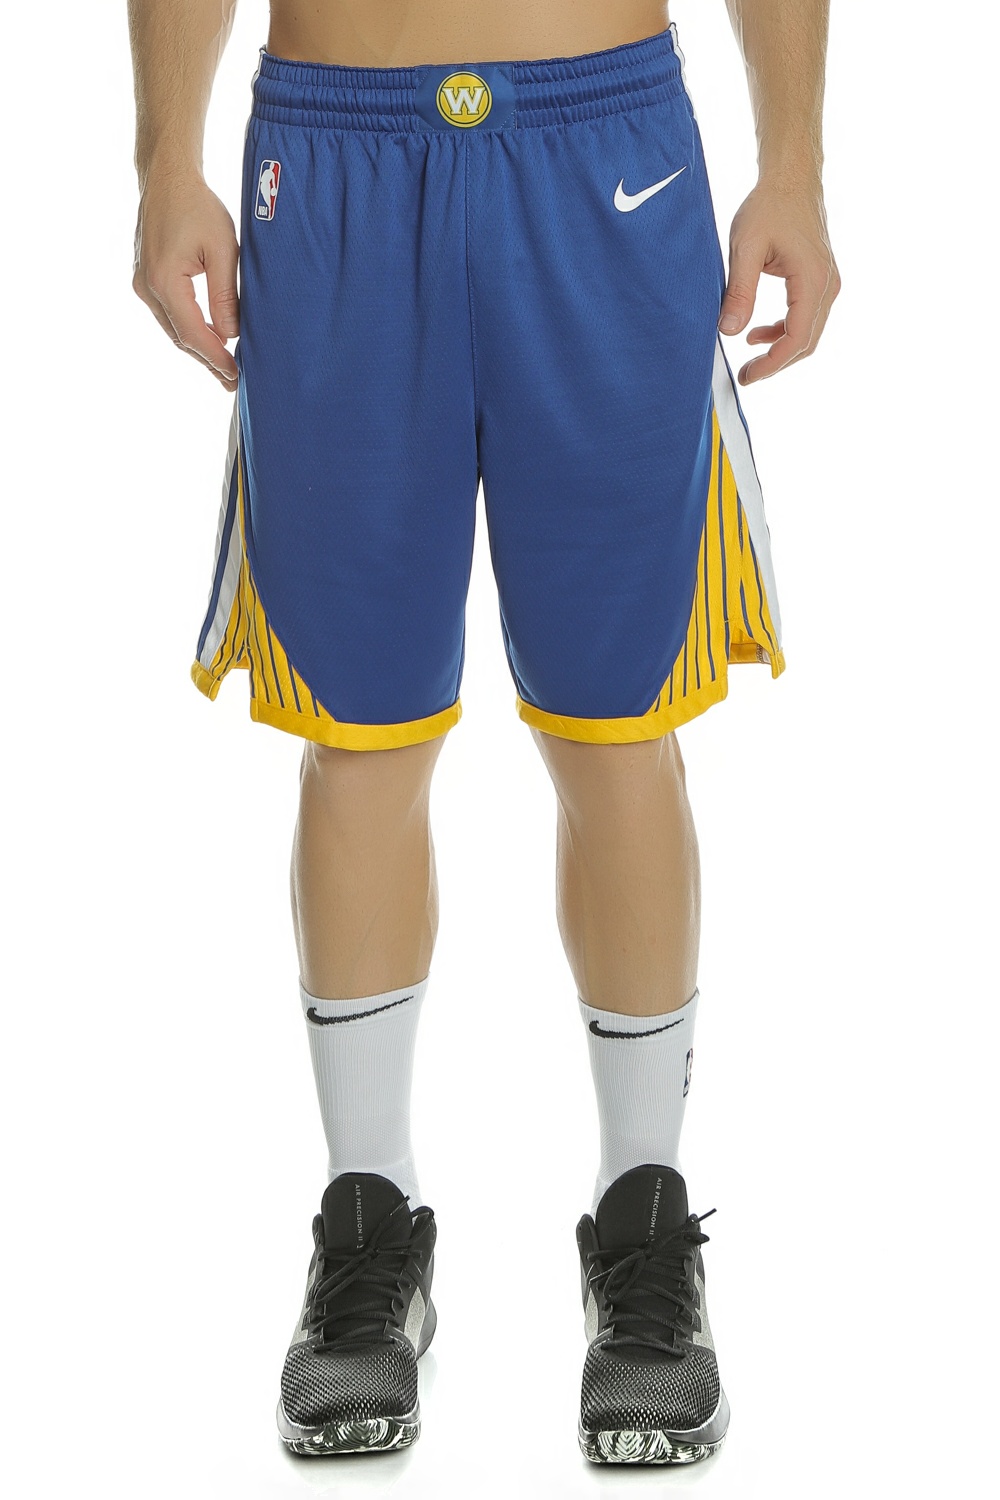 Ανδρικά/Ρούχα/Σορτς-Βερμούδες/Αθλητικά NIKE - Ανδρικό σορτς Nike NBA Golden State Warriors Swingman μπλε